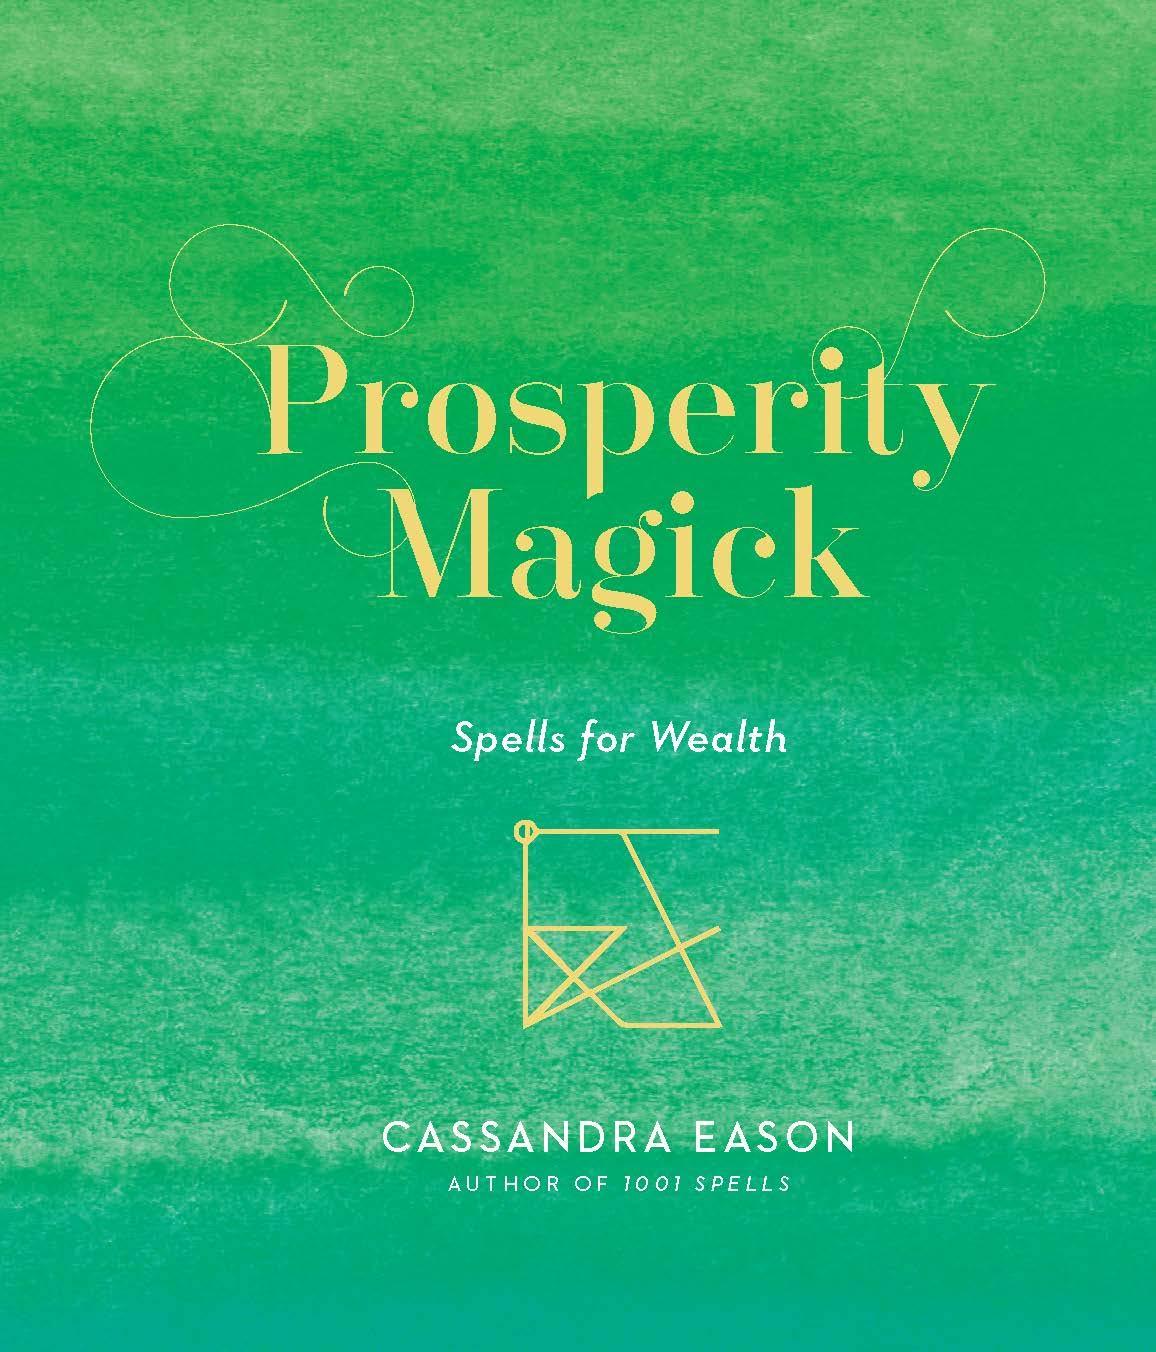 Prosperity Magick Spells for Wealth by Cassandra Eason